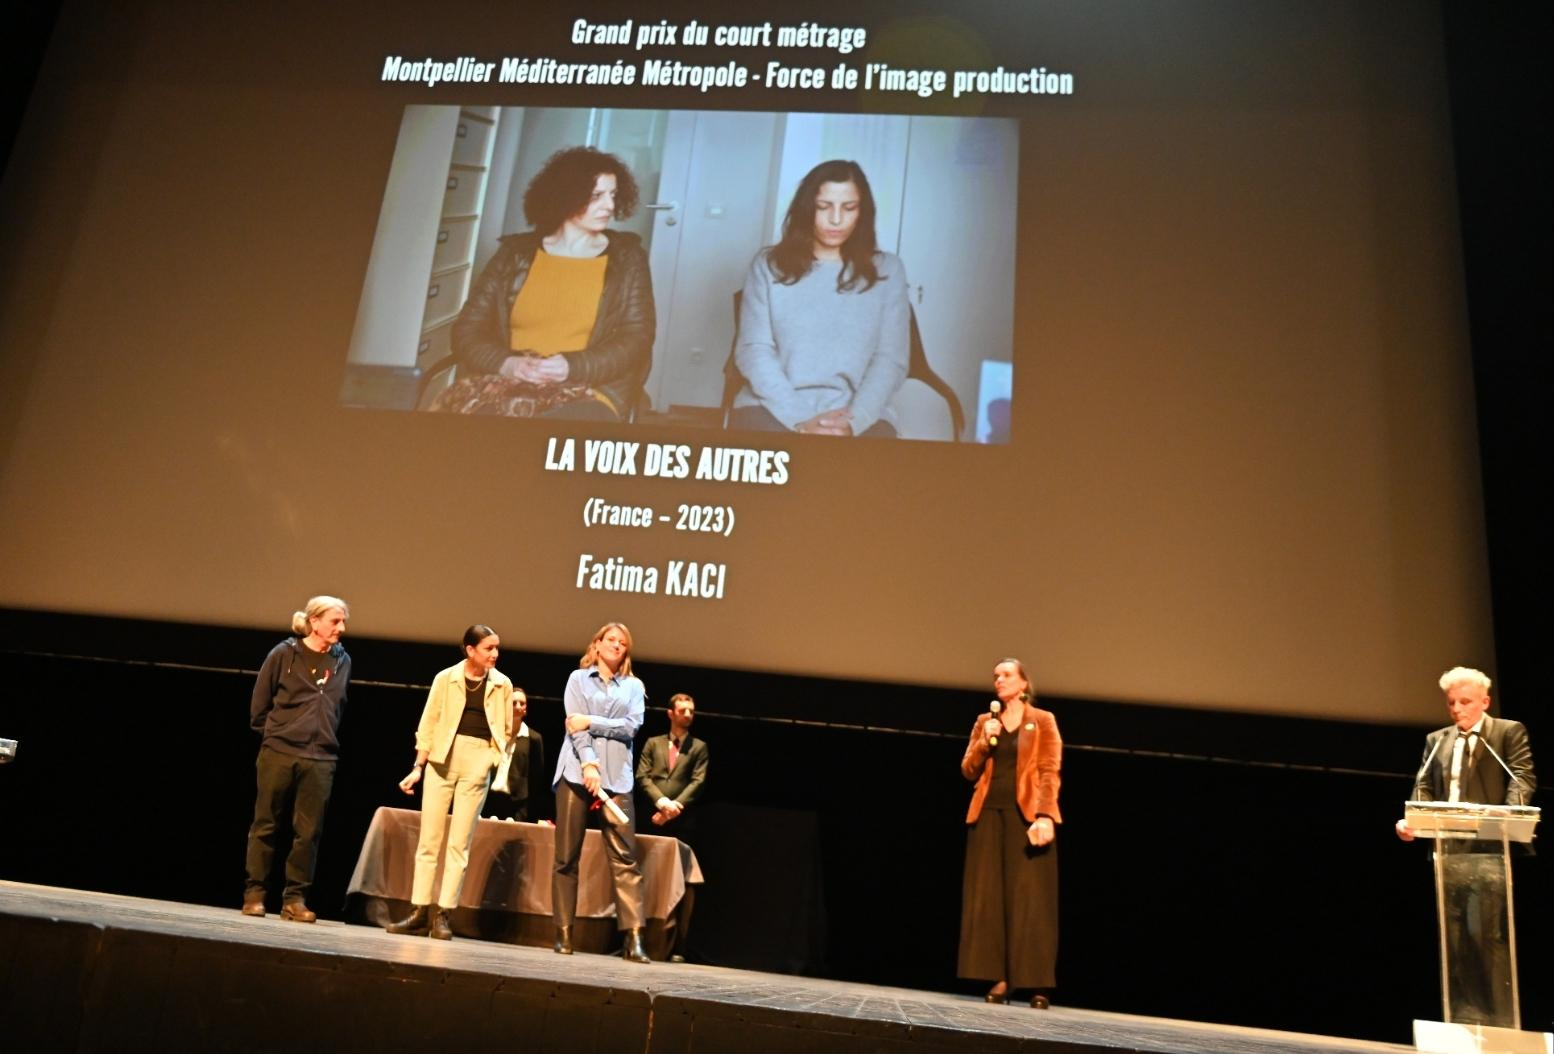 La Voix des autres, grand prix du court métrage remis par Agnès Robin, adjointe déléguée à la culture